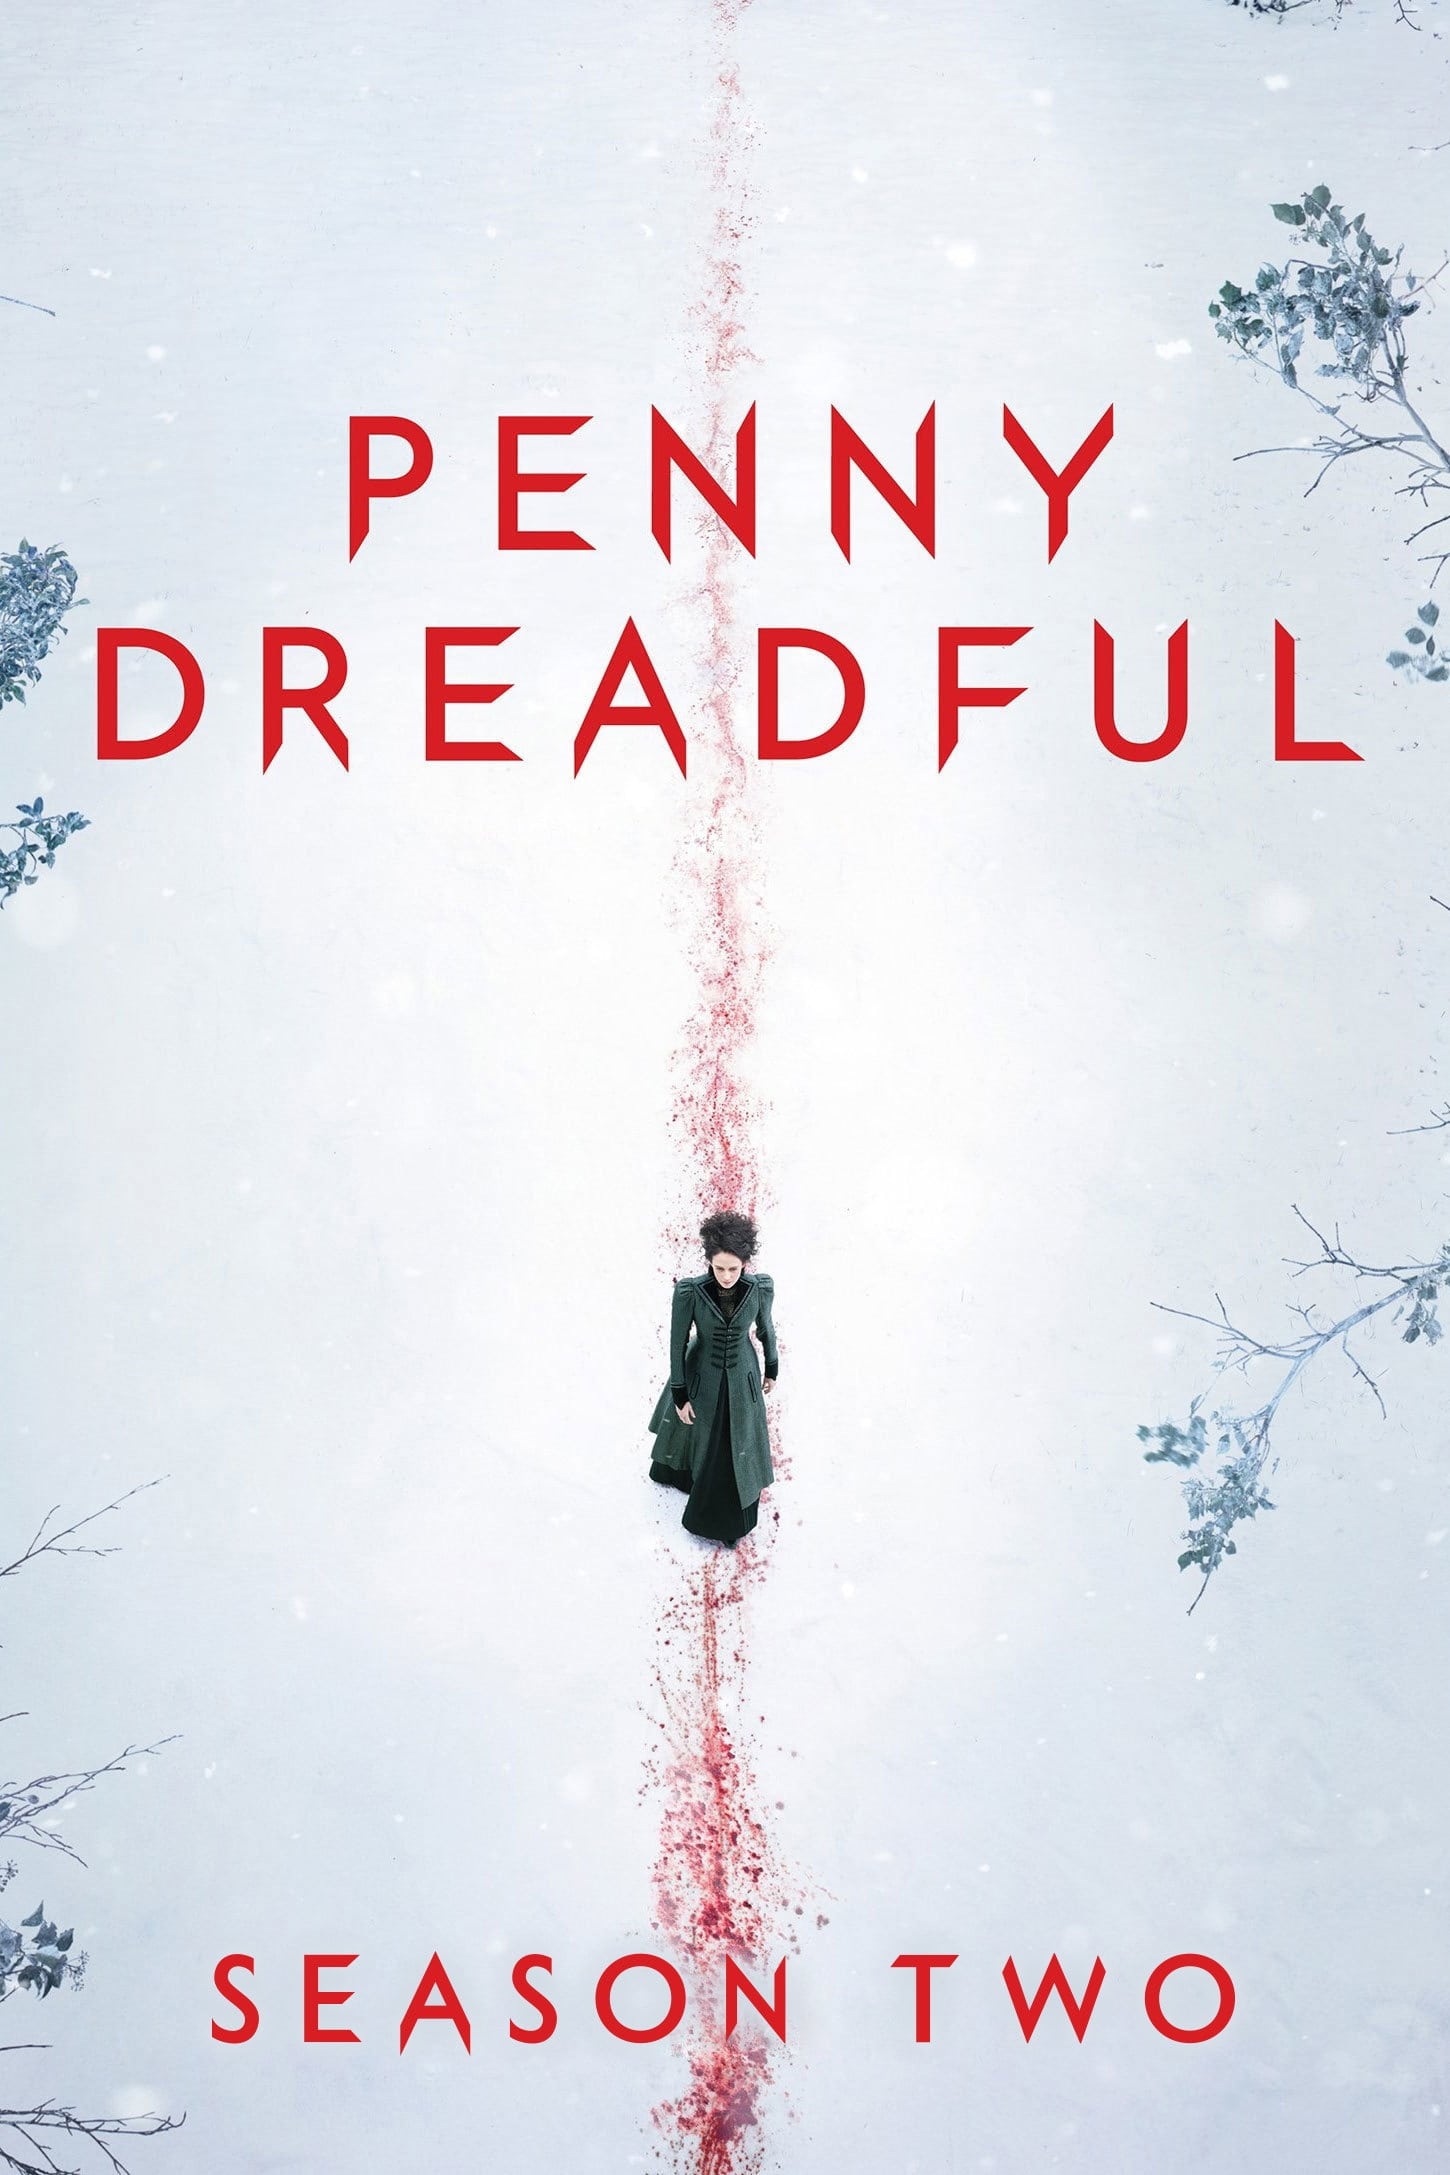 Penny Dreadful เรื่องเล่าเขย่าขวัญ Season 2